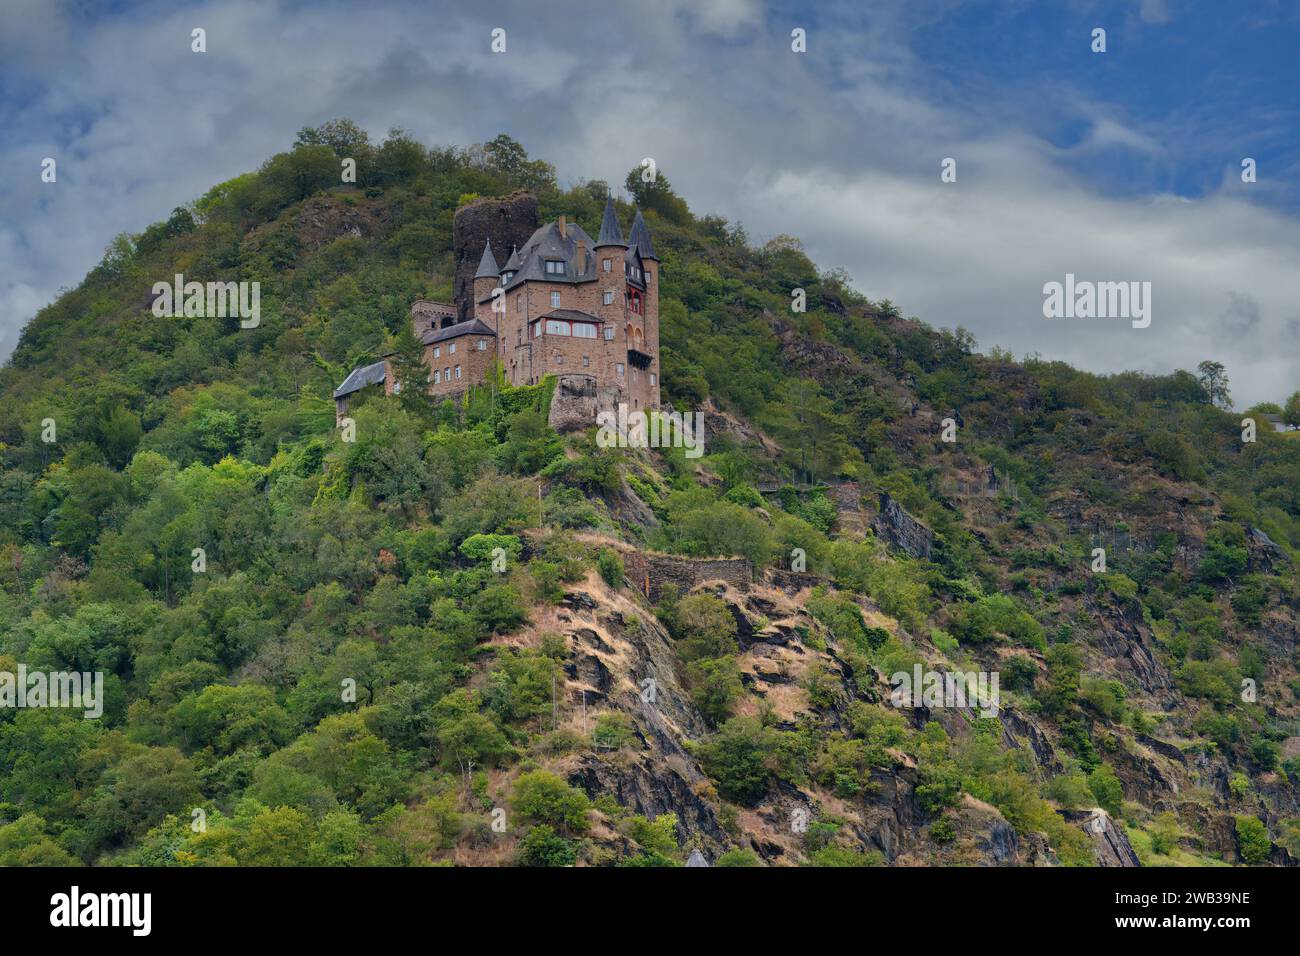 Château de Katz surplombant le Rhin, St Goarshausen, Rhénanie-Palatinat, Allemagne Banque D'Images